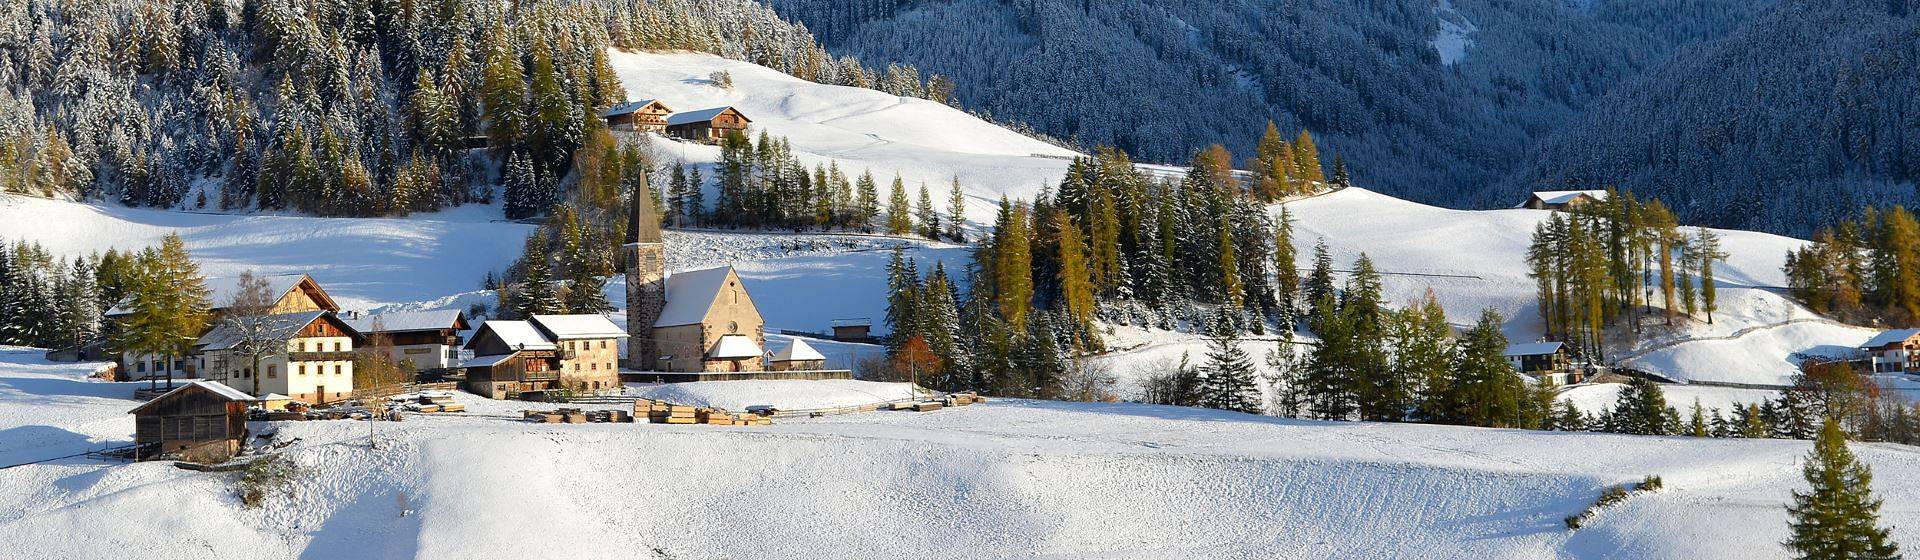 Holidays to Italian Alps Image